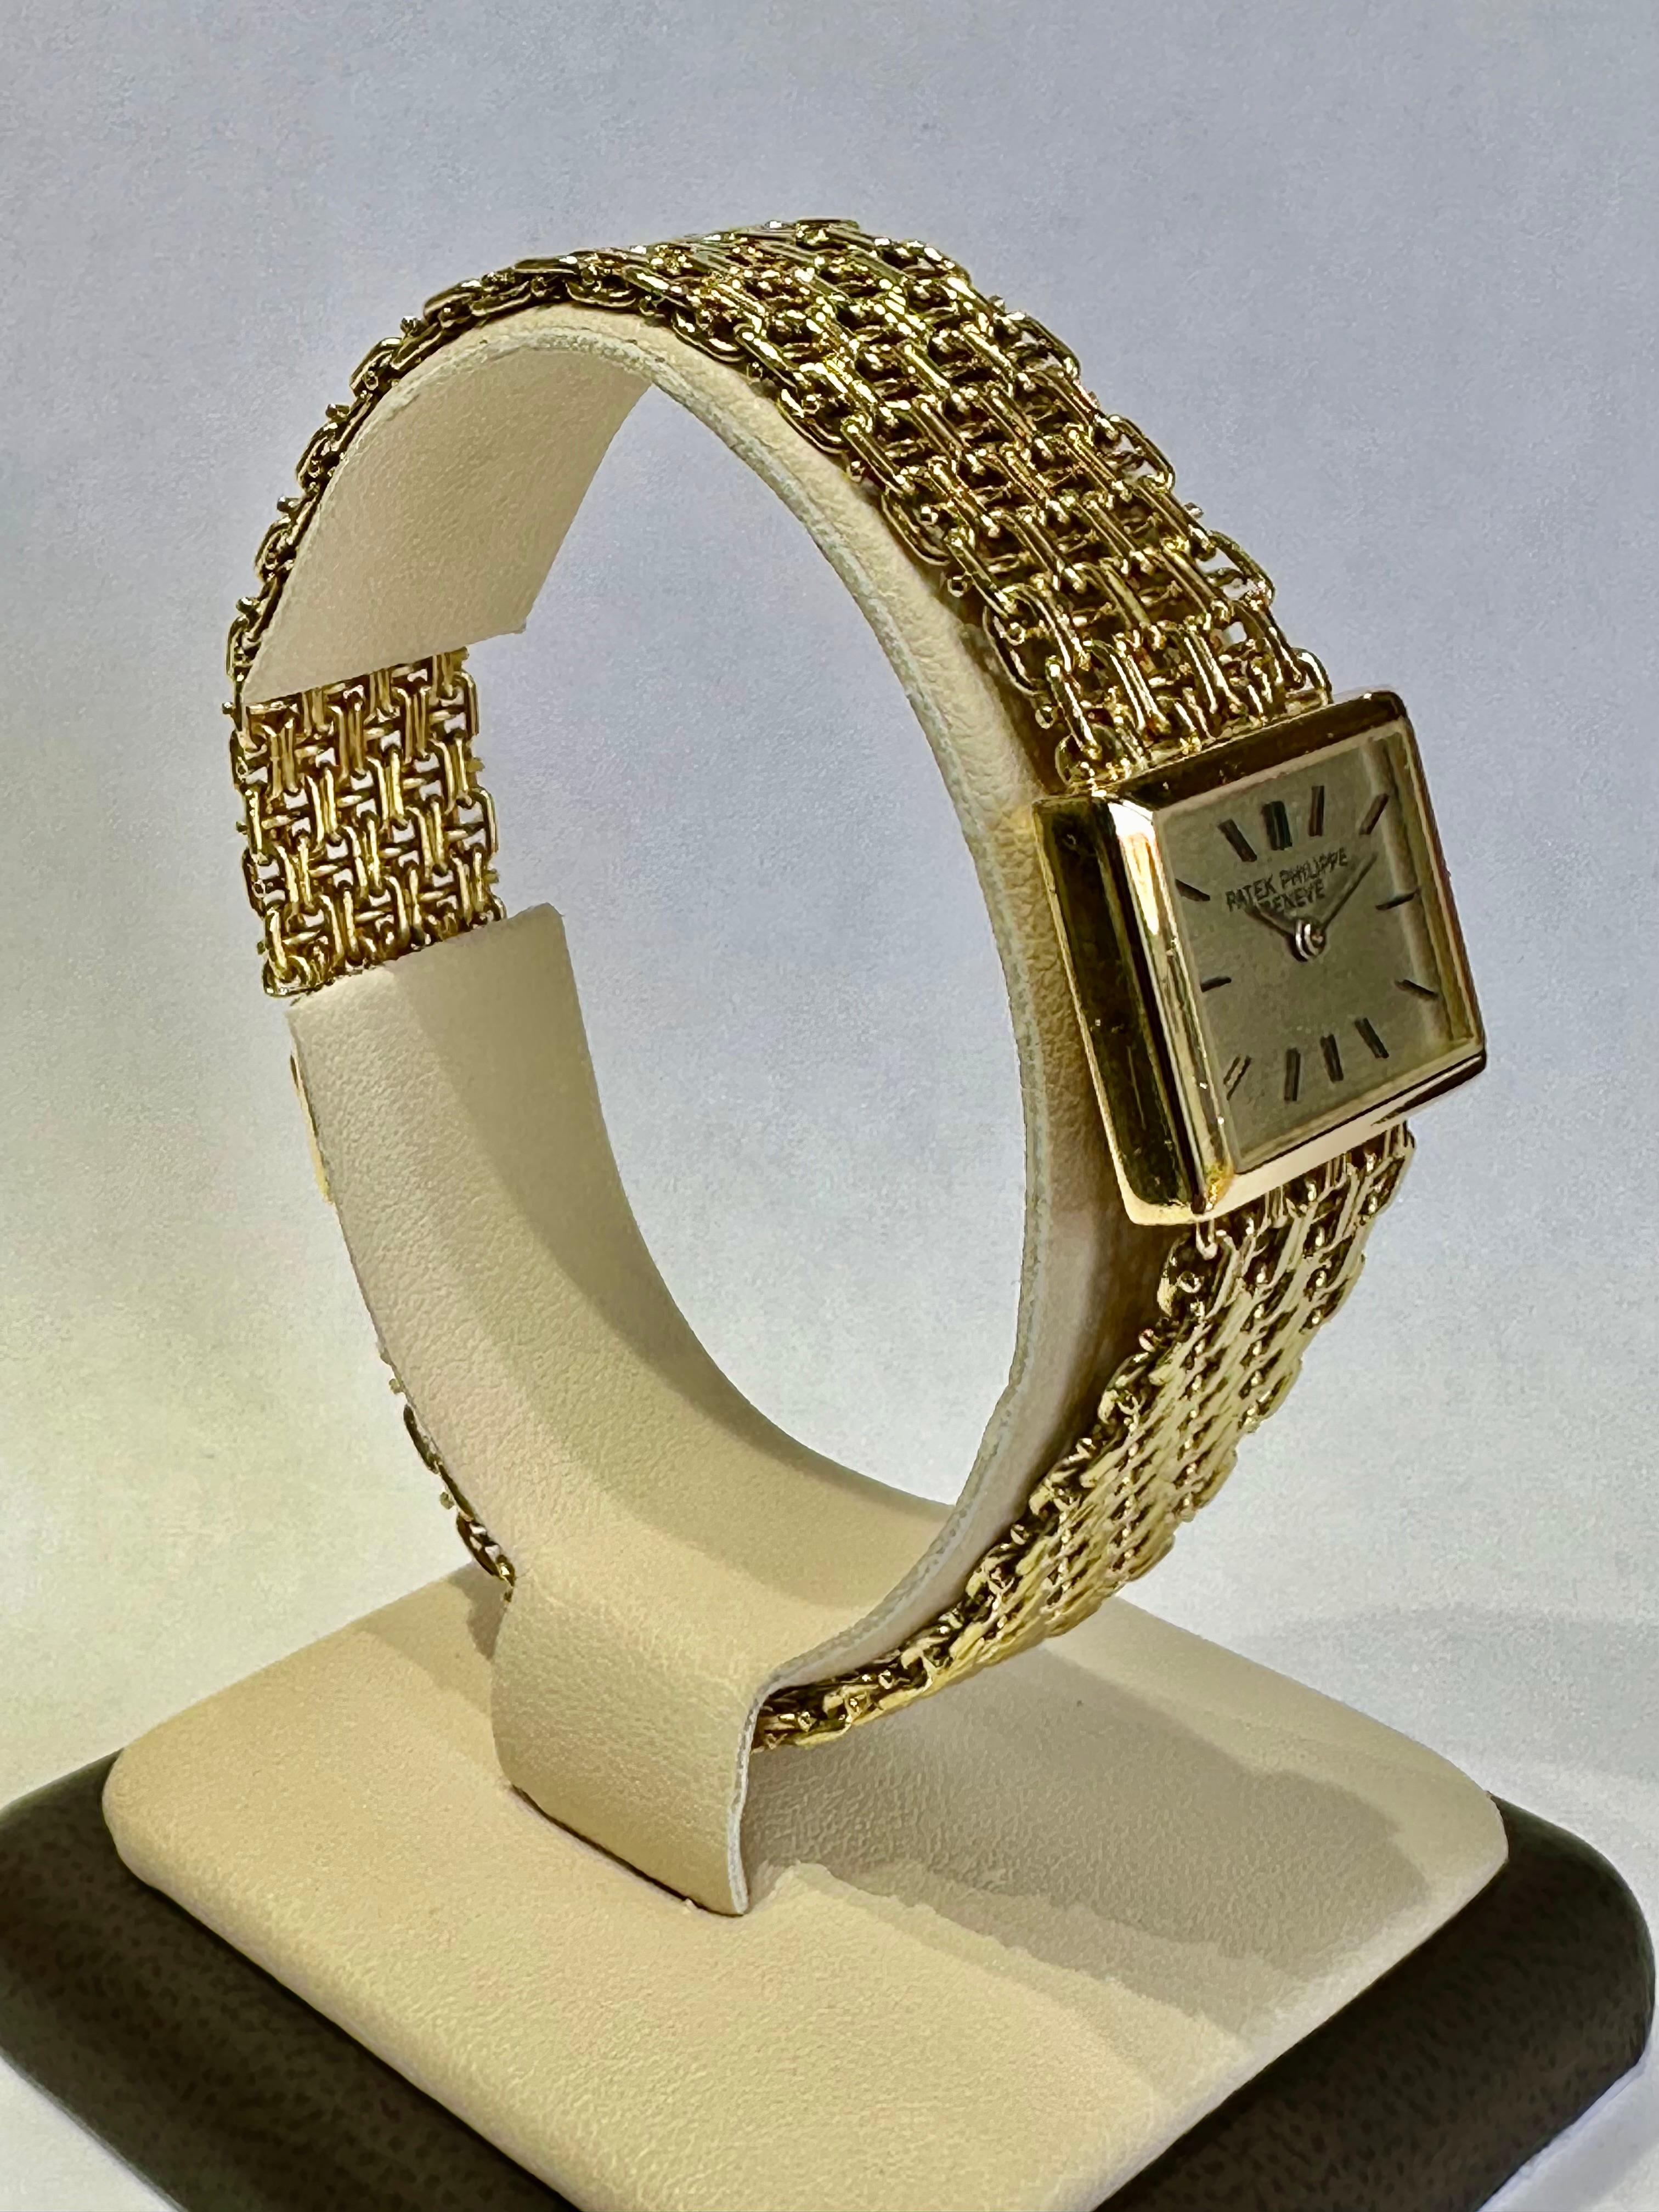 Vintage Patek Philippe Damenuhr 18K Y.G. Ref. # Nr. 3362 1, Gehäuse Nr. 2672712, Uhrwerk Nr. 1240372

Beschreibung / Zustand: Alle Uhren wurden professionell überprüft und gewartet, bevor sie zum Verkauf angeboten wurden. Guter Zustand.

Hersteller: